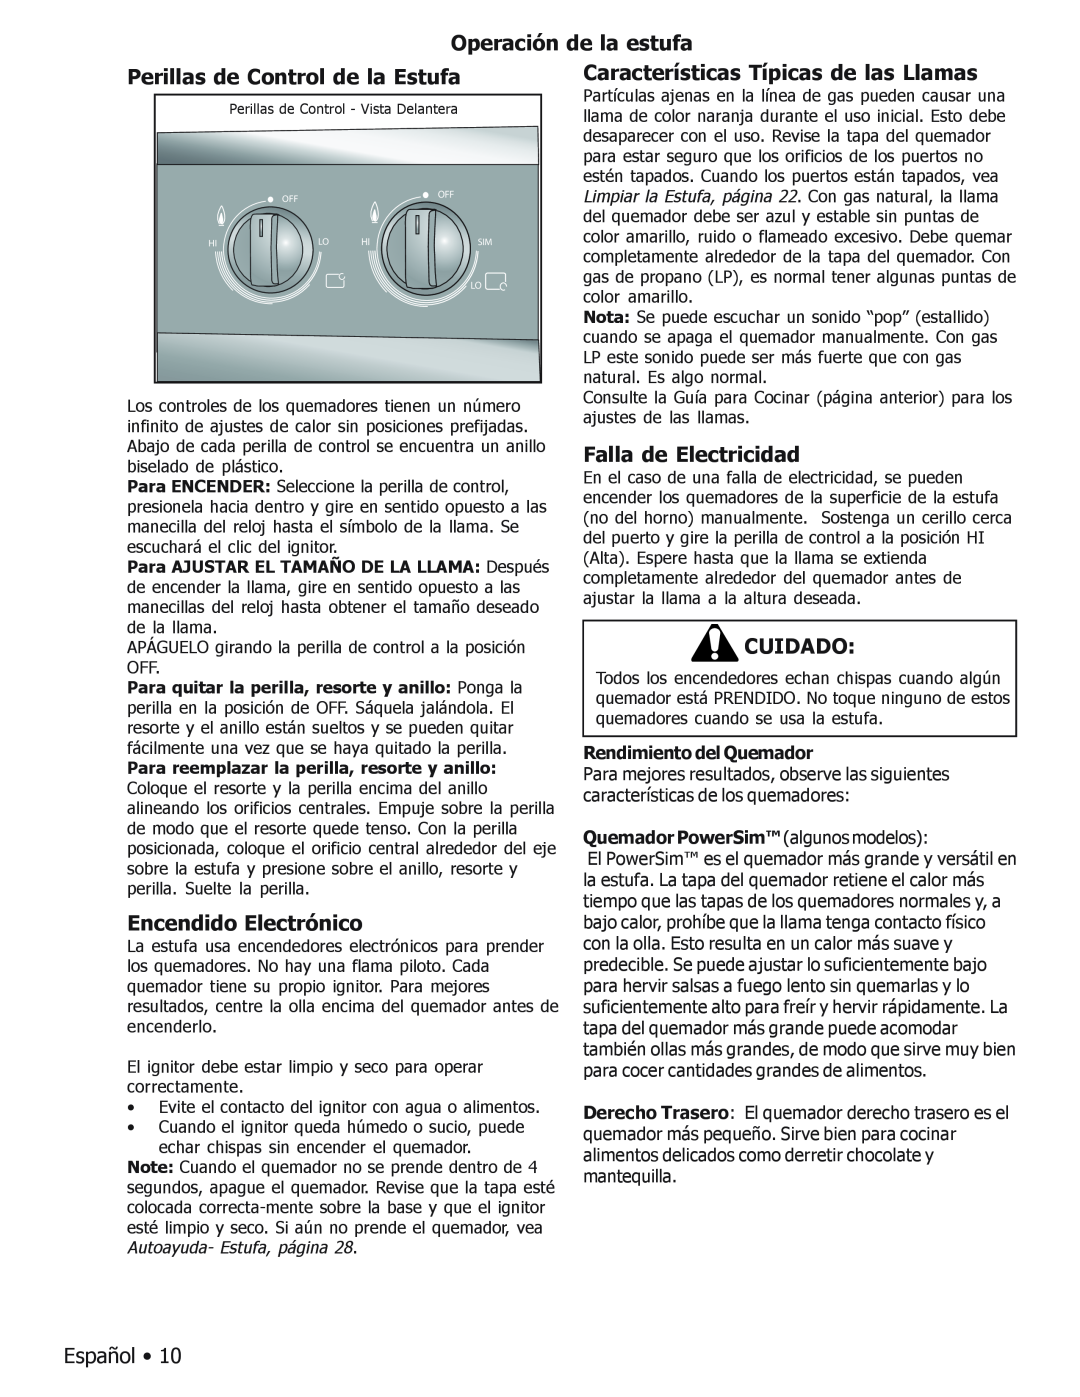 Bosch Appliances BOSCH GAS FREE-STANDING CONVECTION RANGE manual Operación de la estufa, Perillas de Control de la Estufa 